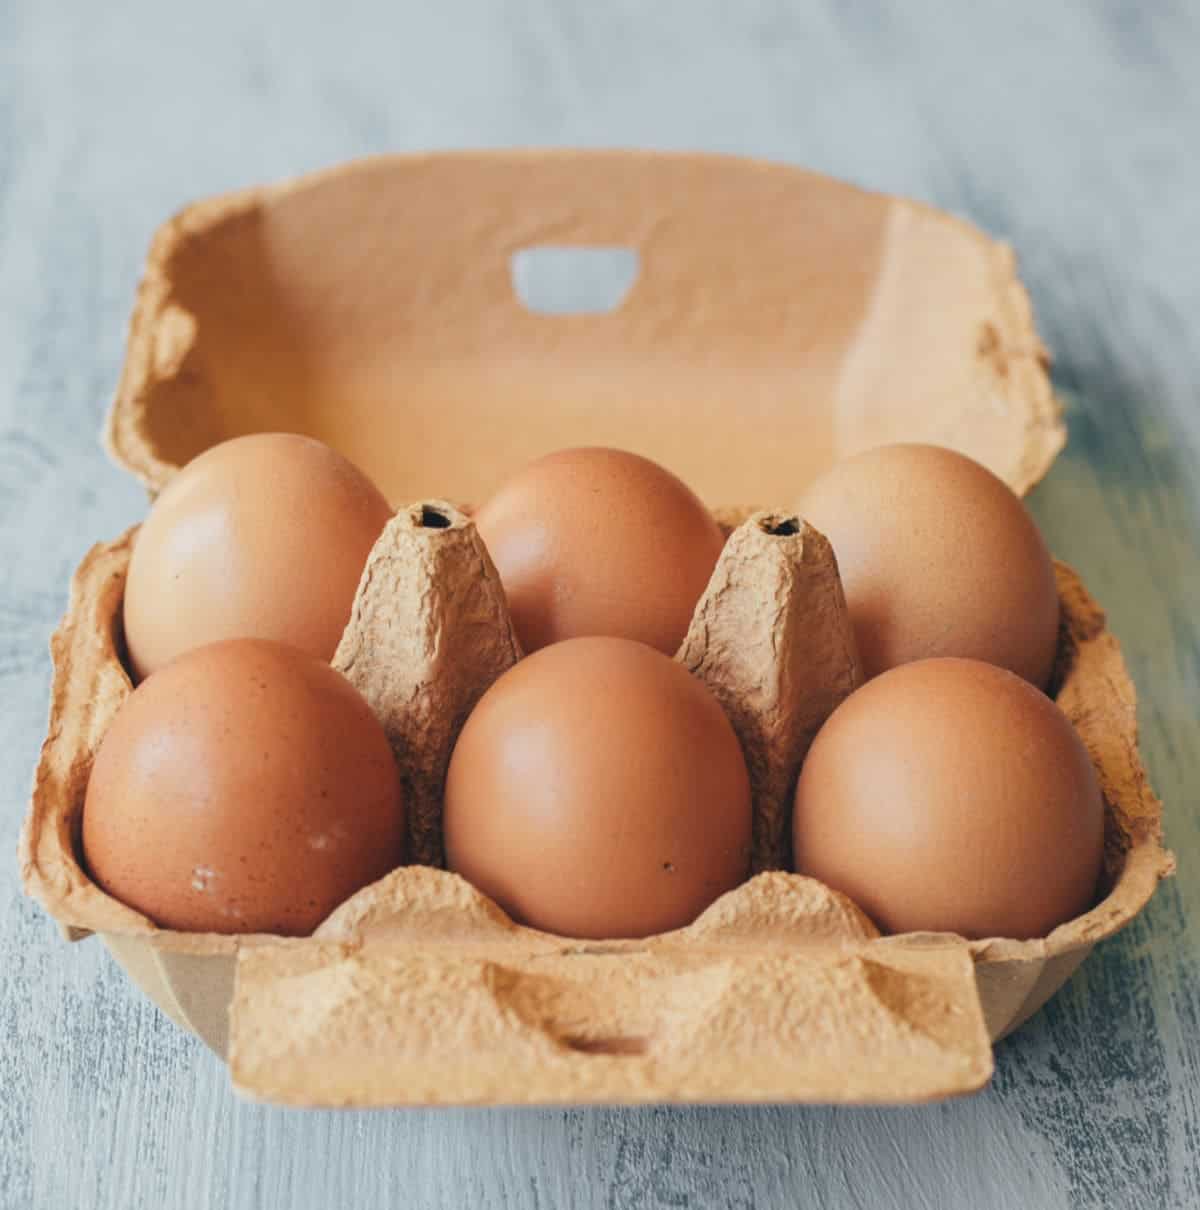 6 eggs in a carton